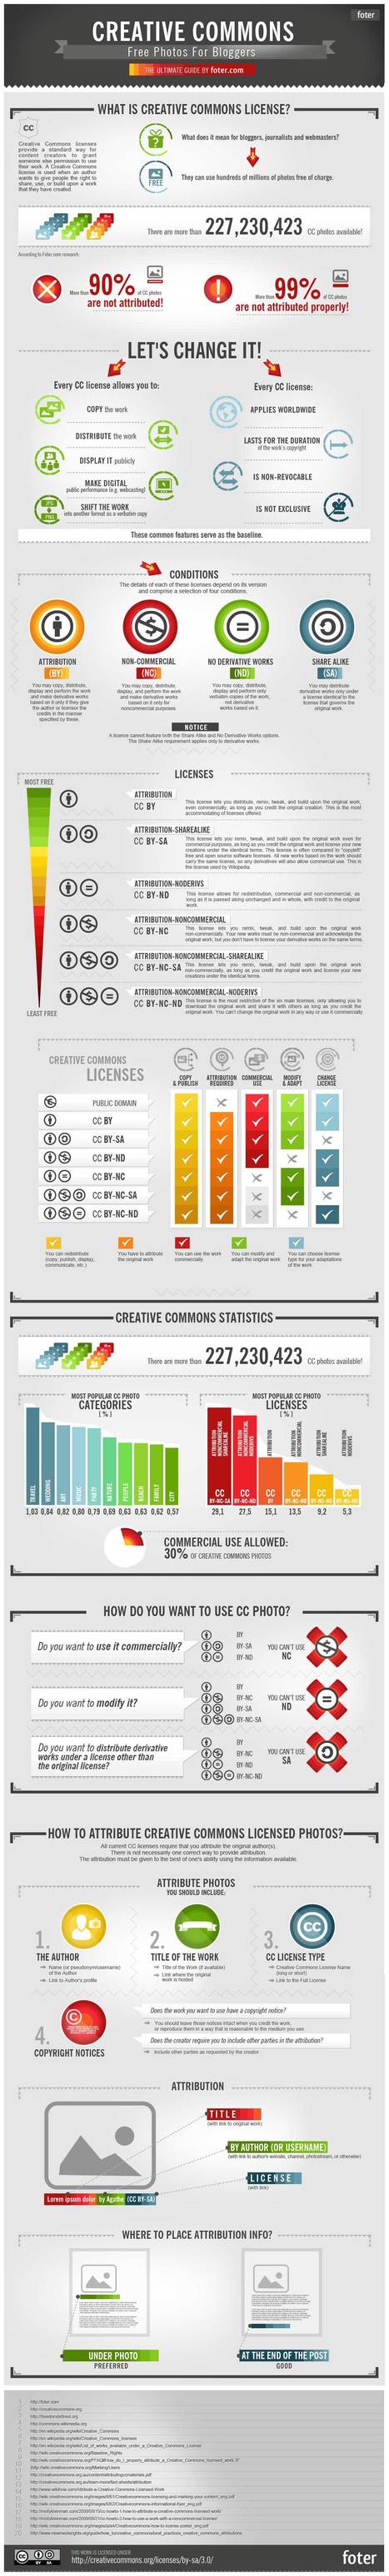 CreativeCommons-Infographic | Boîte à outils numériques | Scoop.it